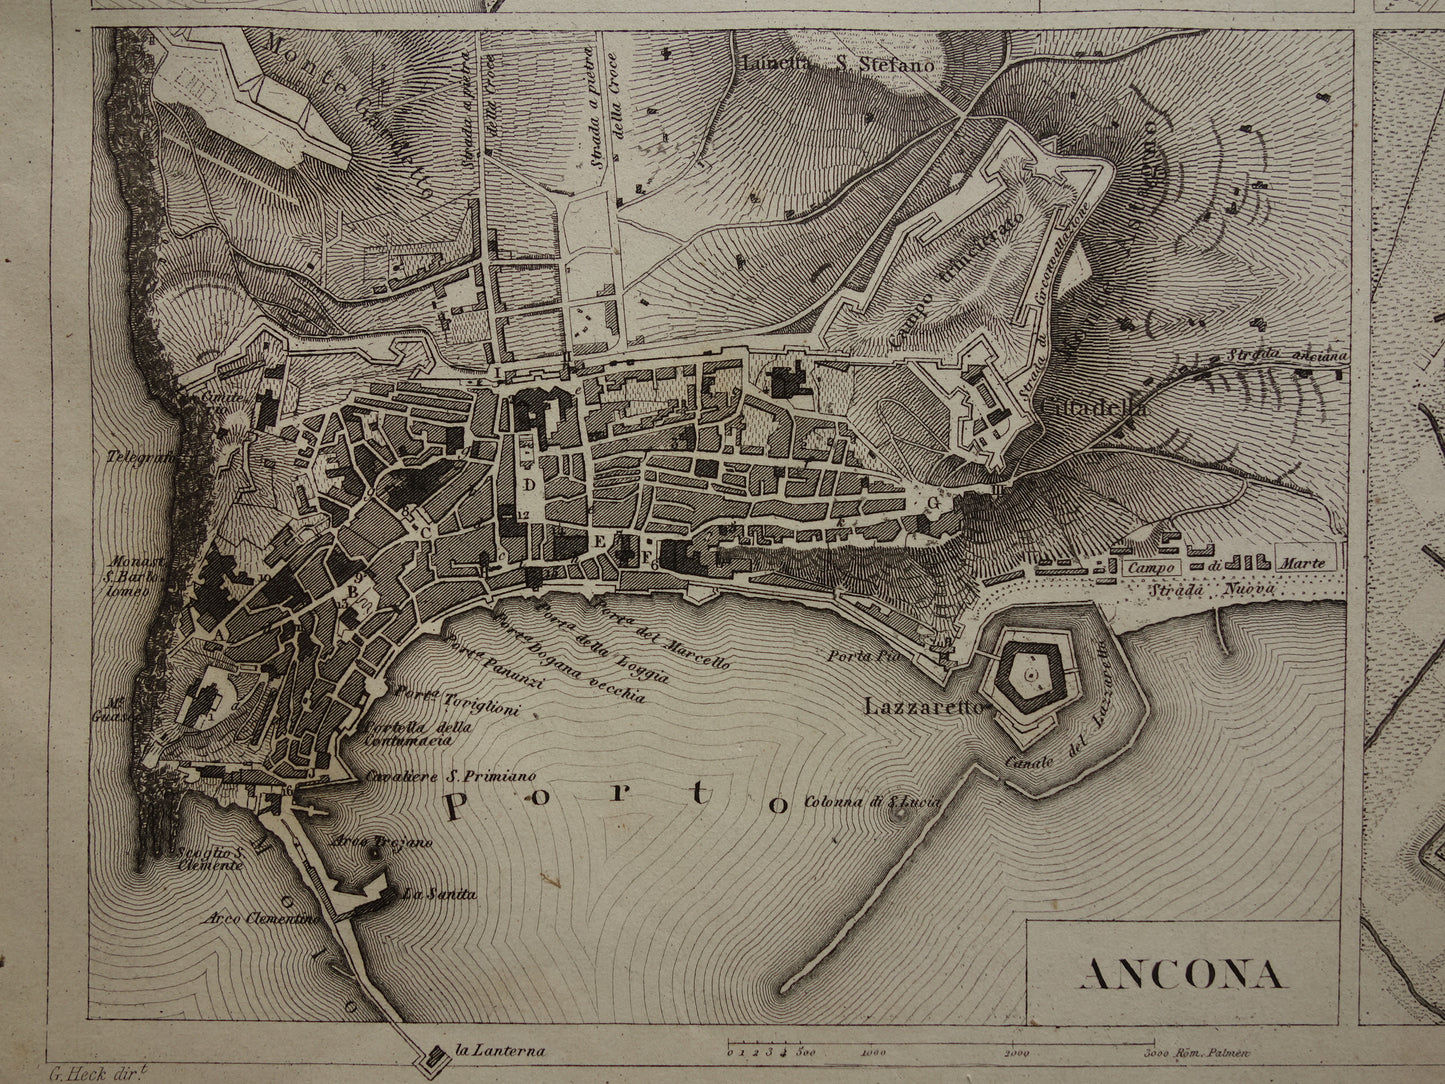 Florence Livorno Modena Ancona antieke plattegrond 170+ jaar oude kaart van Italiaanse steden plattegronden Italië uit 1849 - originele vintage historische kaarten